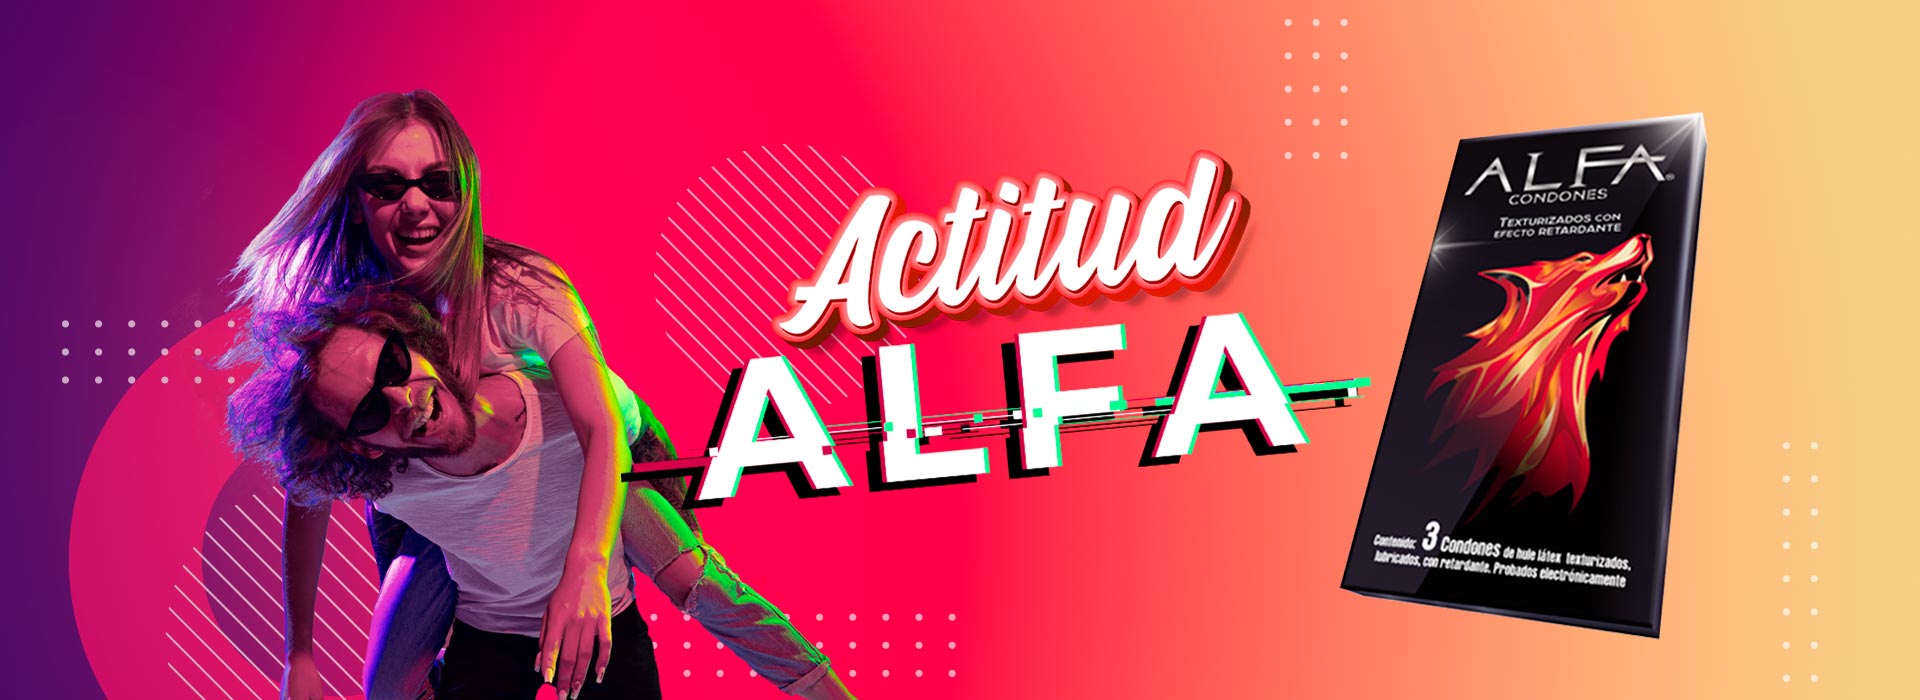 Condones ALFA, Actitud alfa